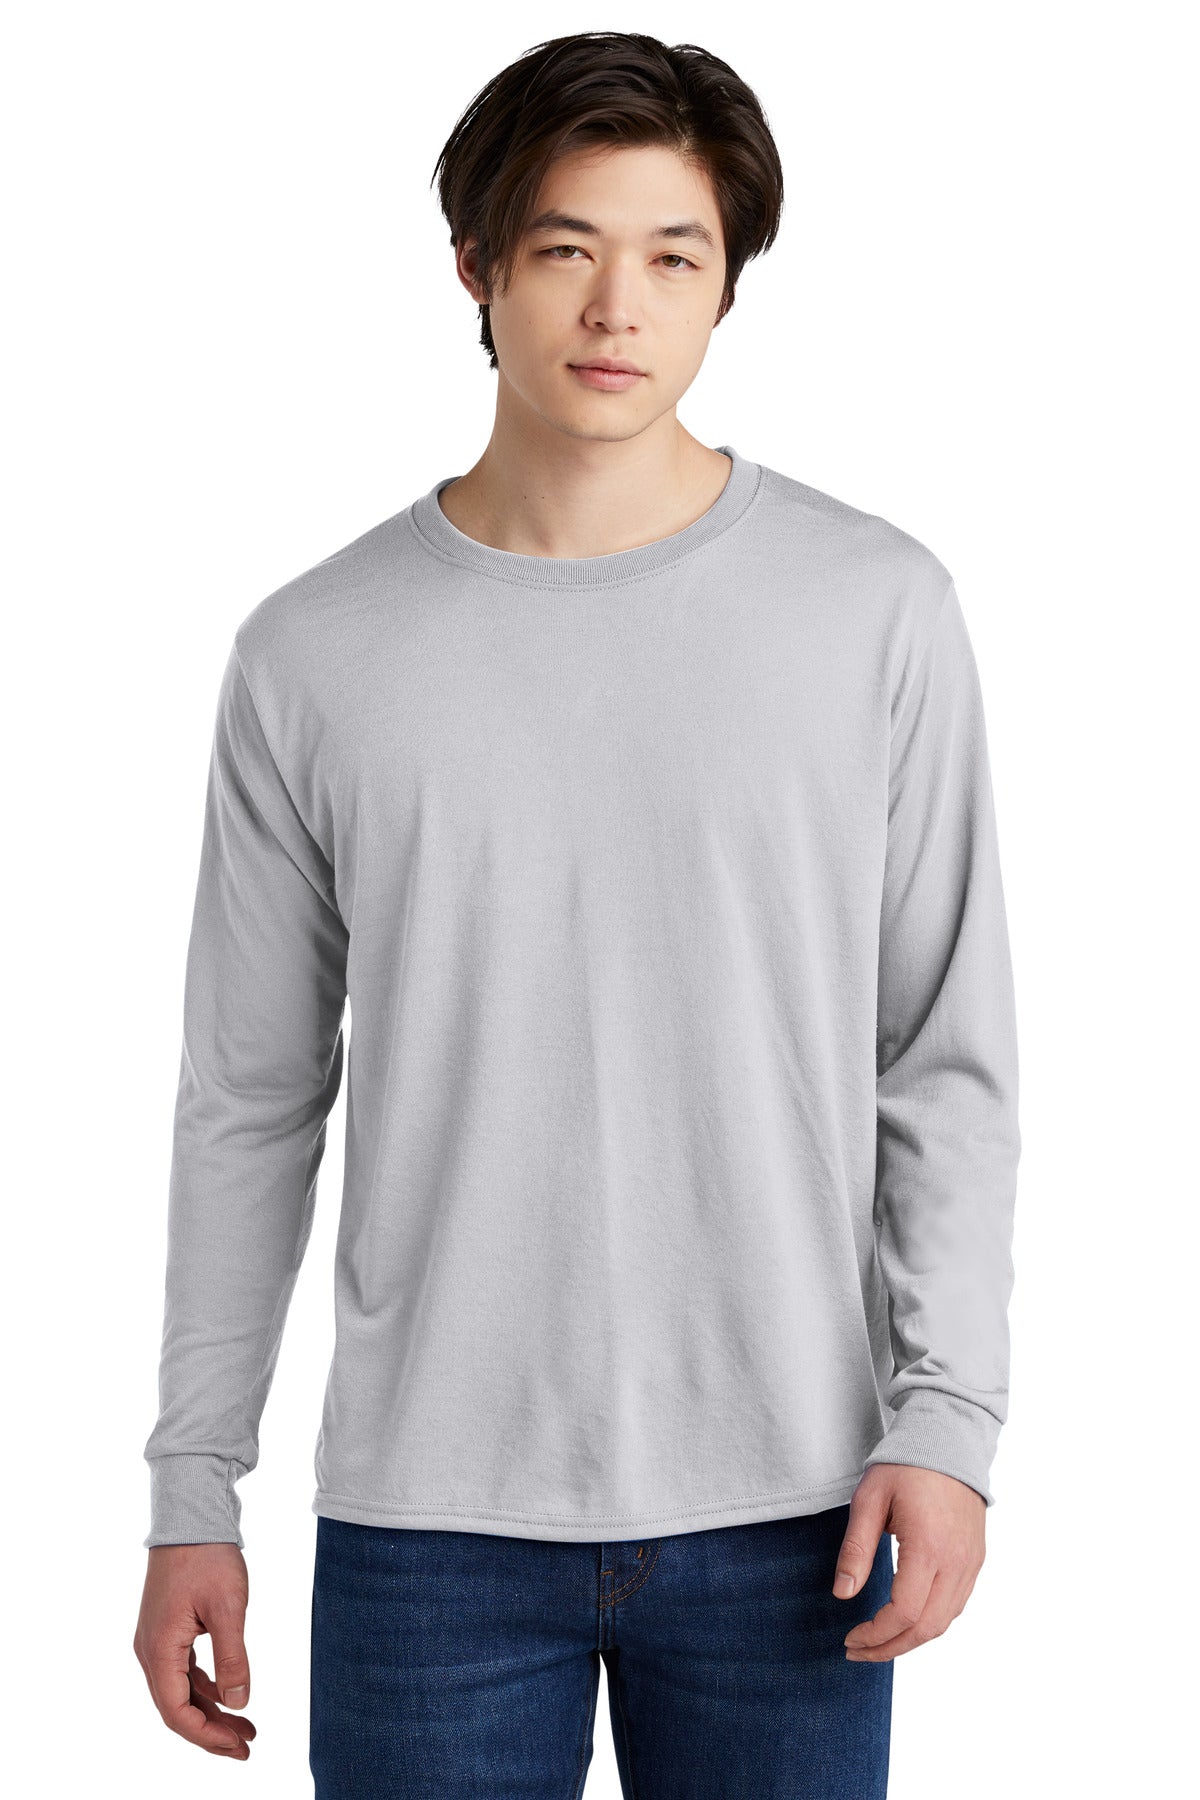 JERZEES® Dri-Power® 100% Polyester Long Sleeve T-Shirt 21LS